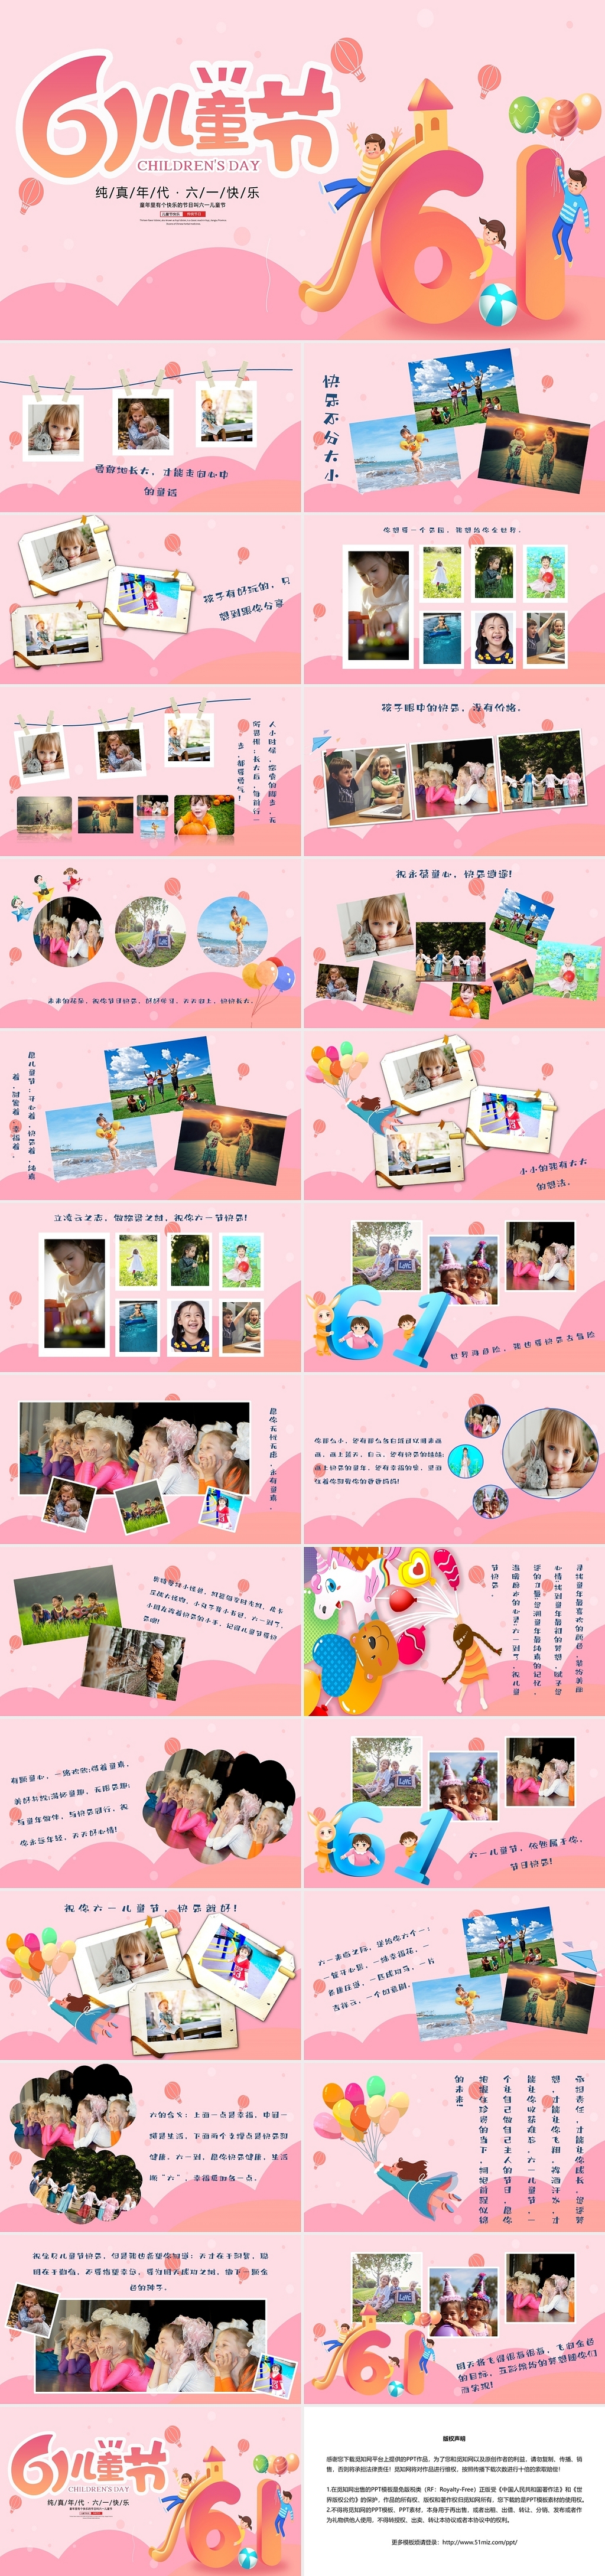 粉色卡通可爱温馨61儿童节主题相册PPT模板儿童节照片墙